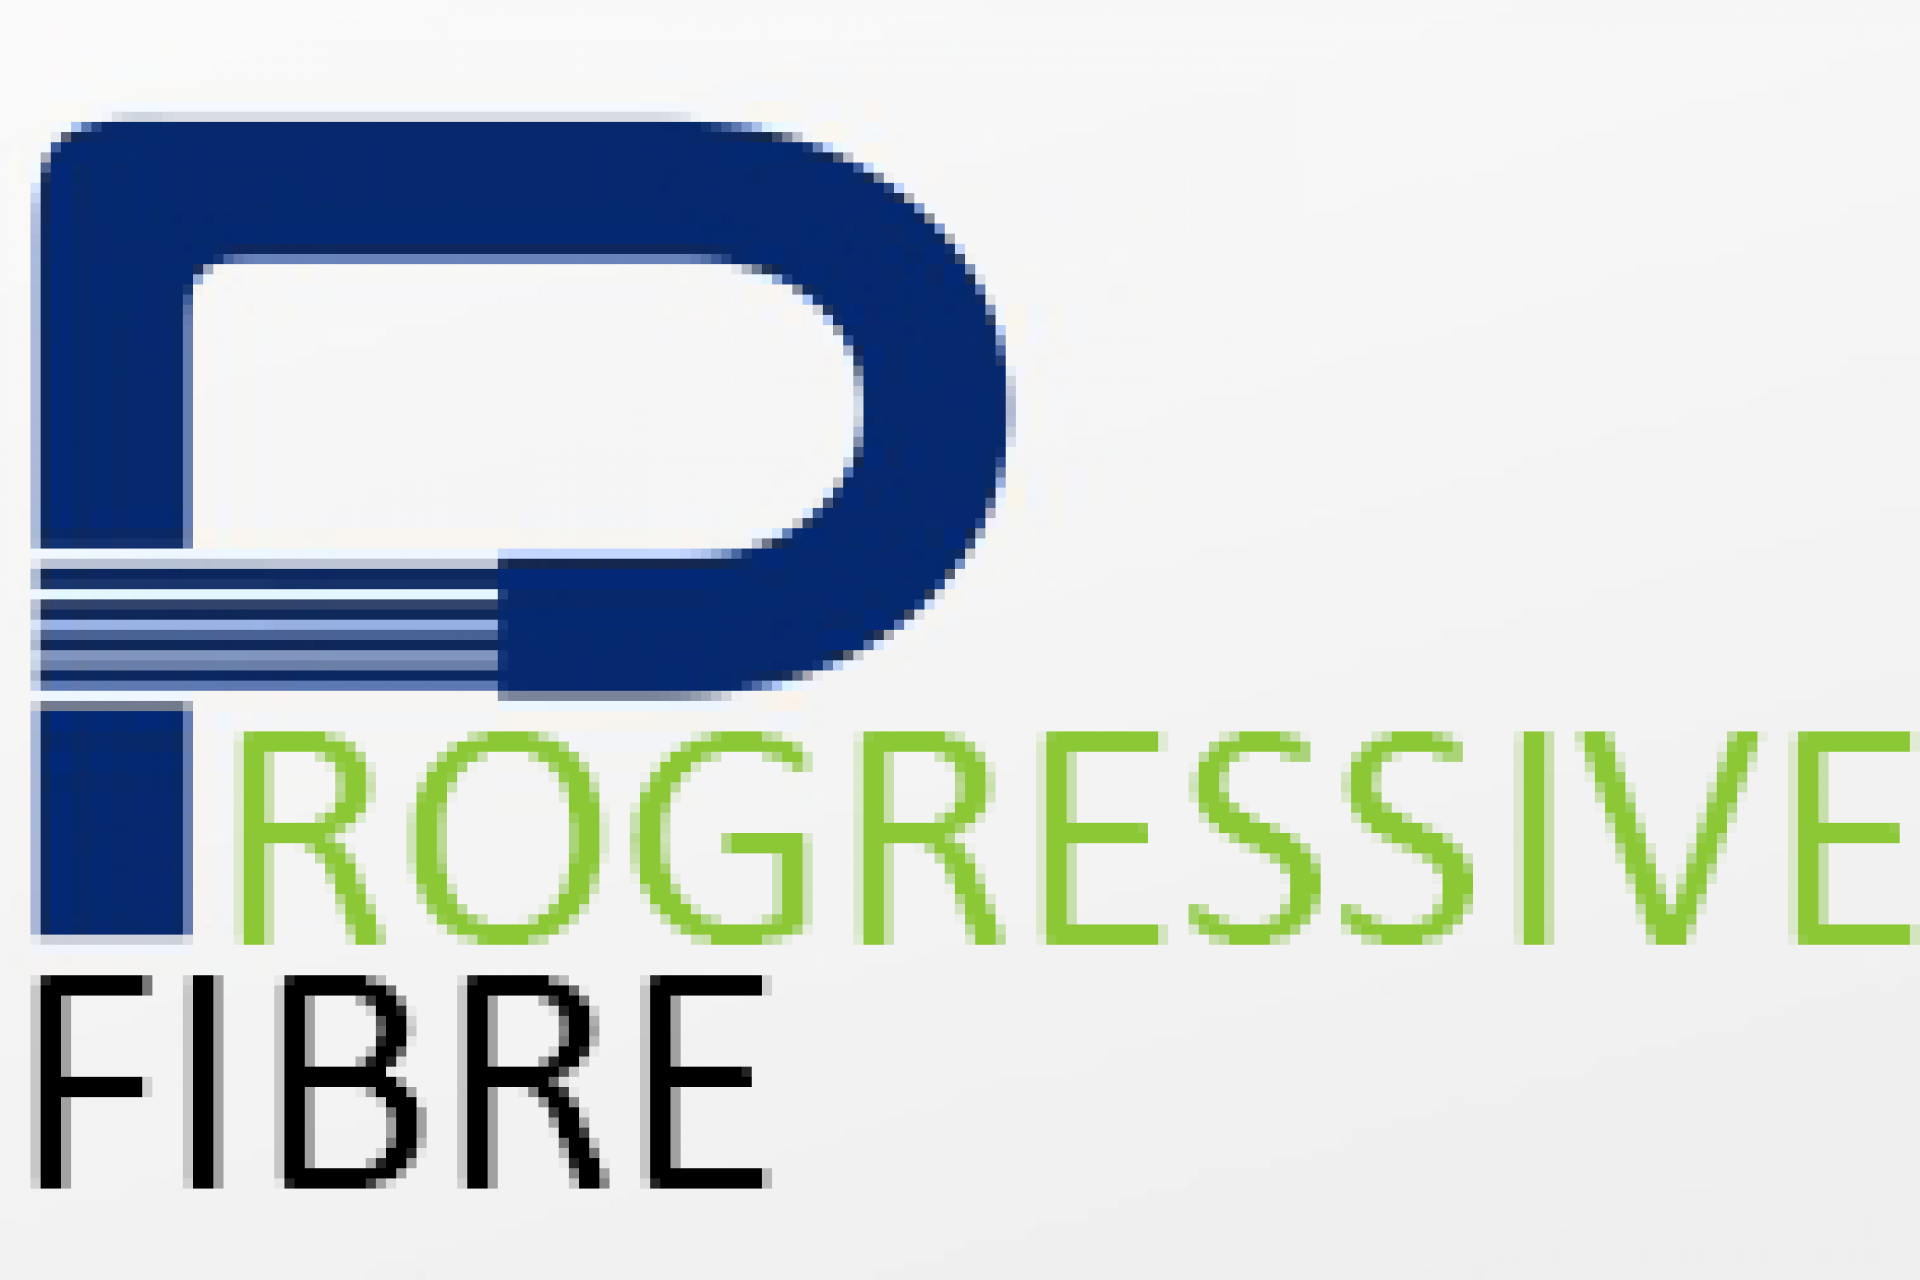 Progressive Fibre Ltd